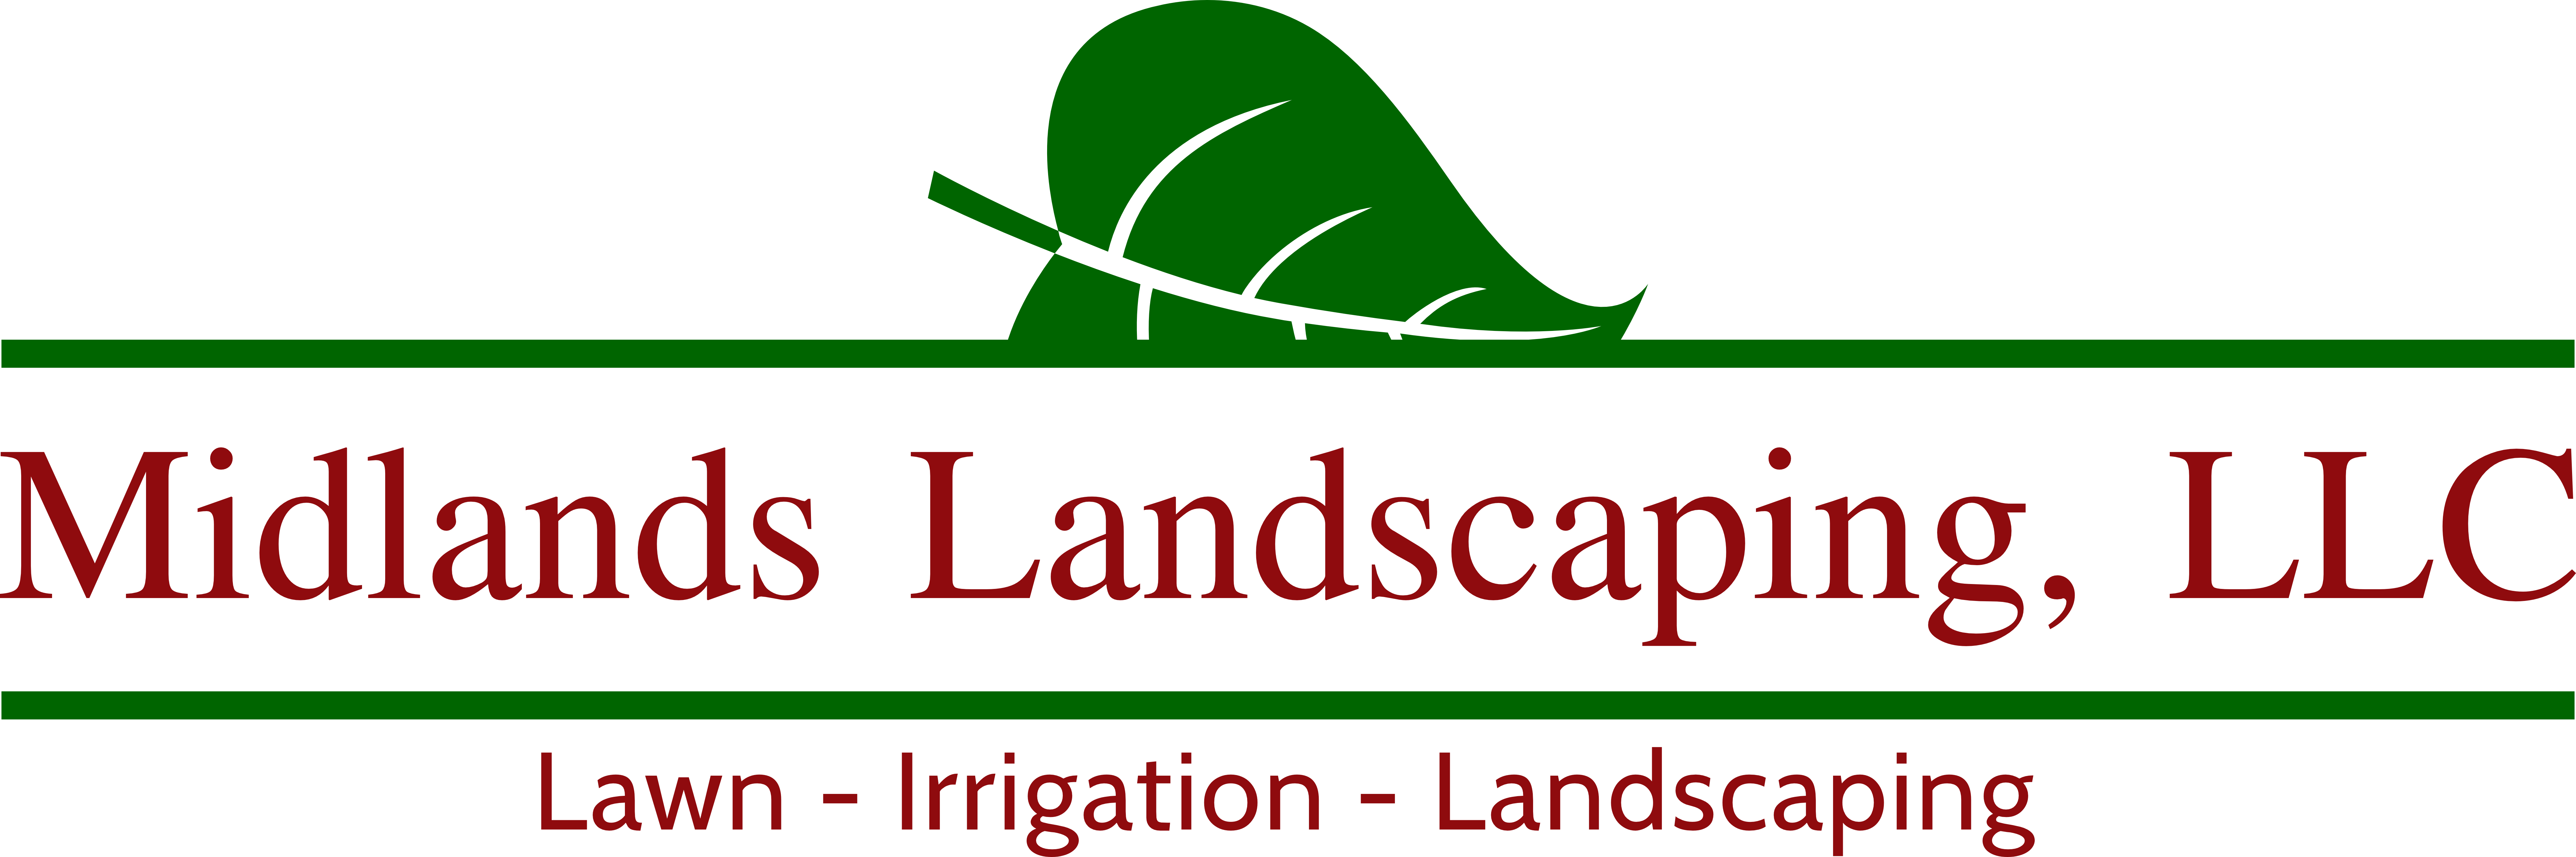 Midlands Landscaping, LLC